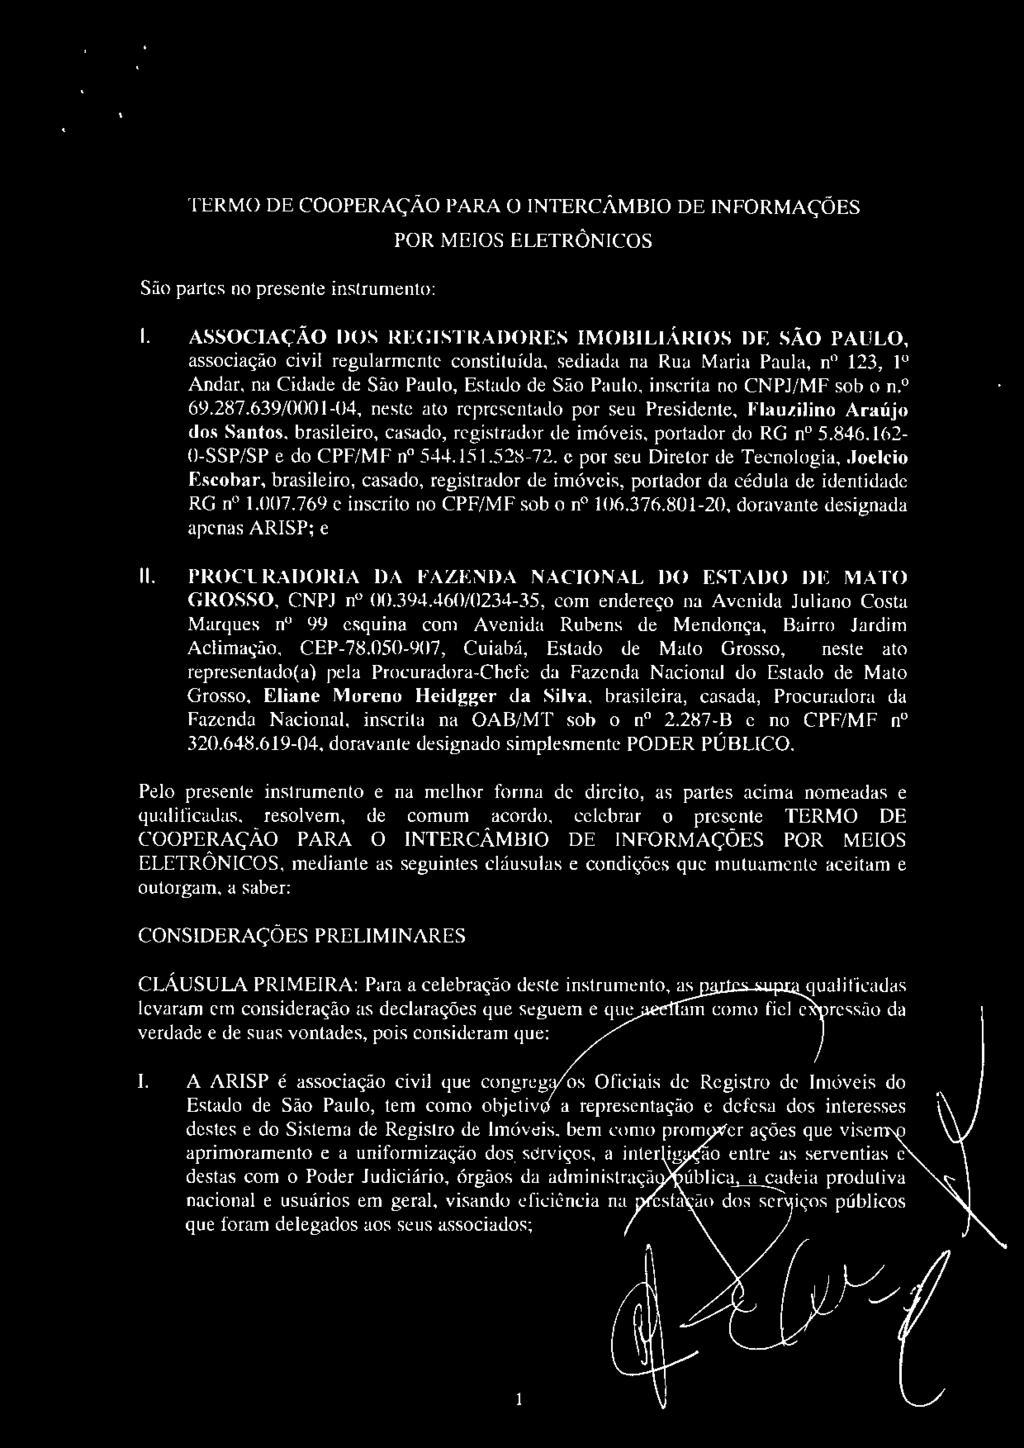 CNPJ/MF sob o n. 0 69.287.639/0001-04, neste ato representado por seu Presidente, Flauzilino Araújo dos Santos, brasileiro, casado, registrador de imóveis, portador do RG n 5.846.